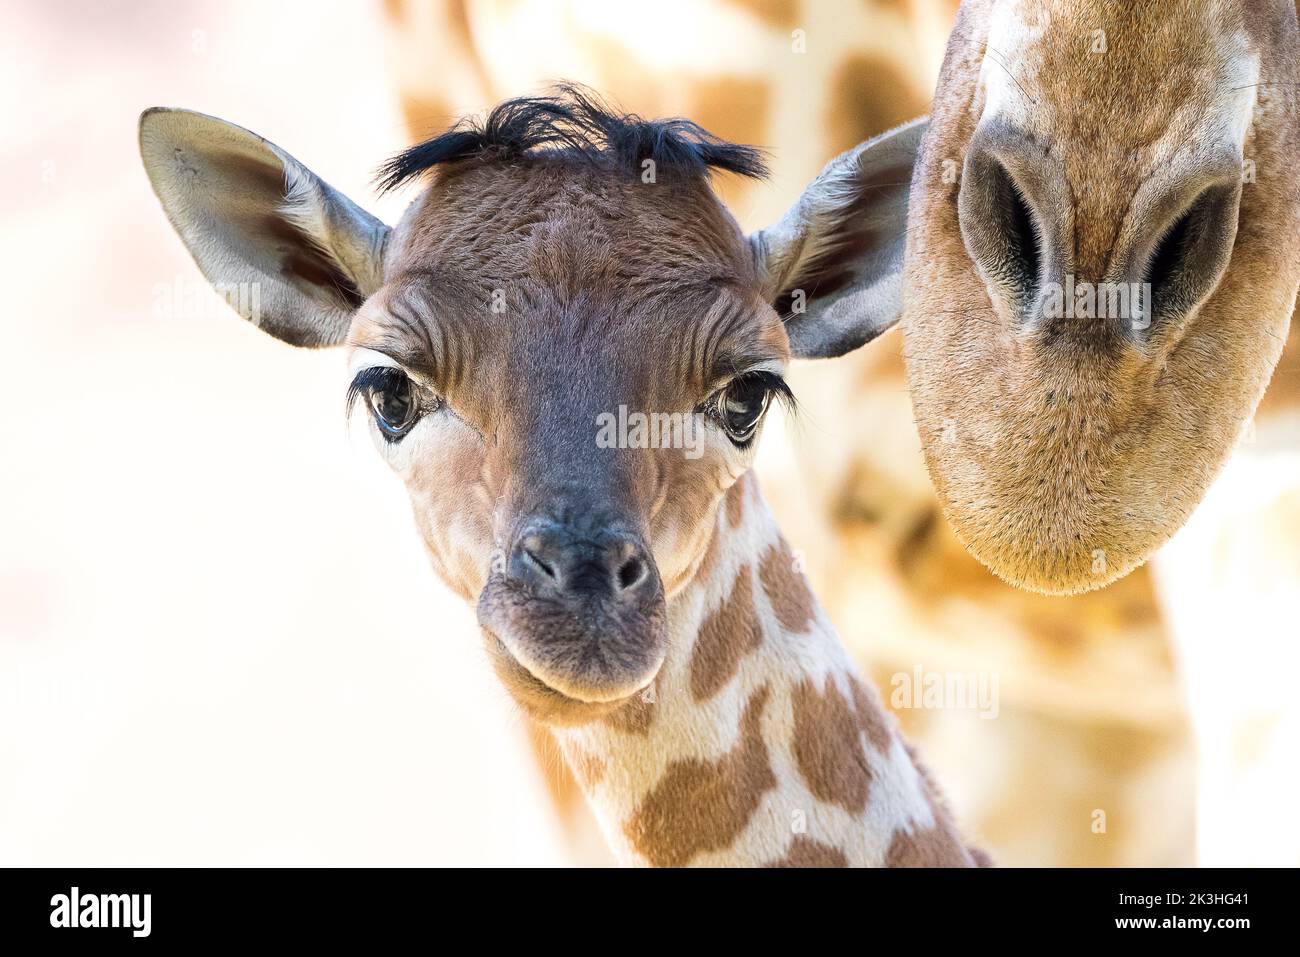 Giraffe with baby Stock Photo